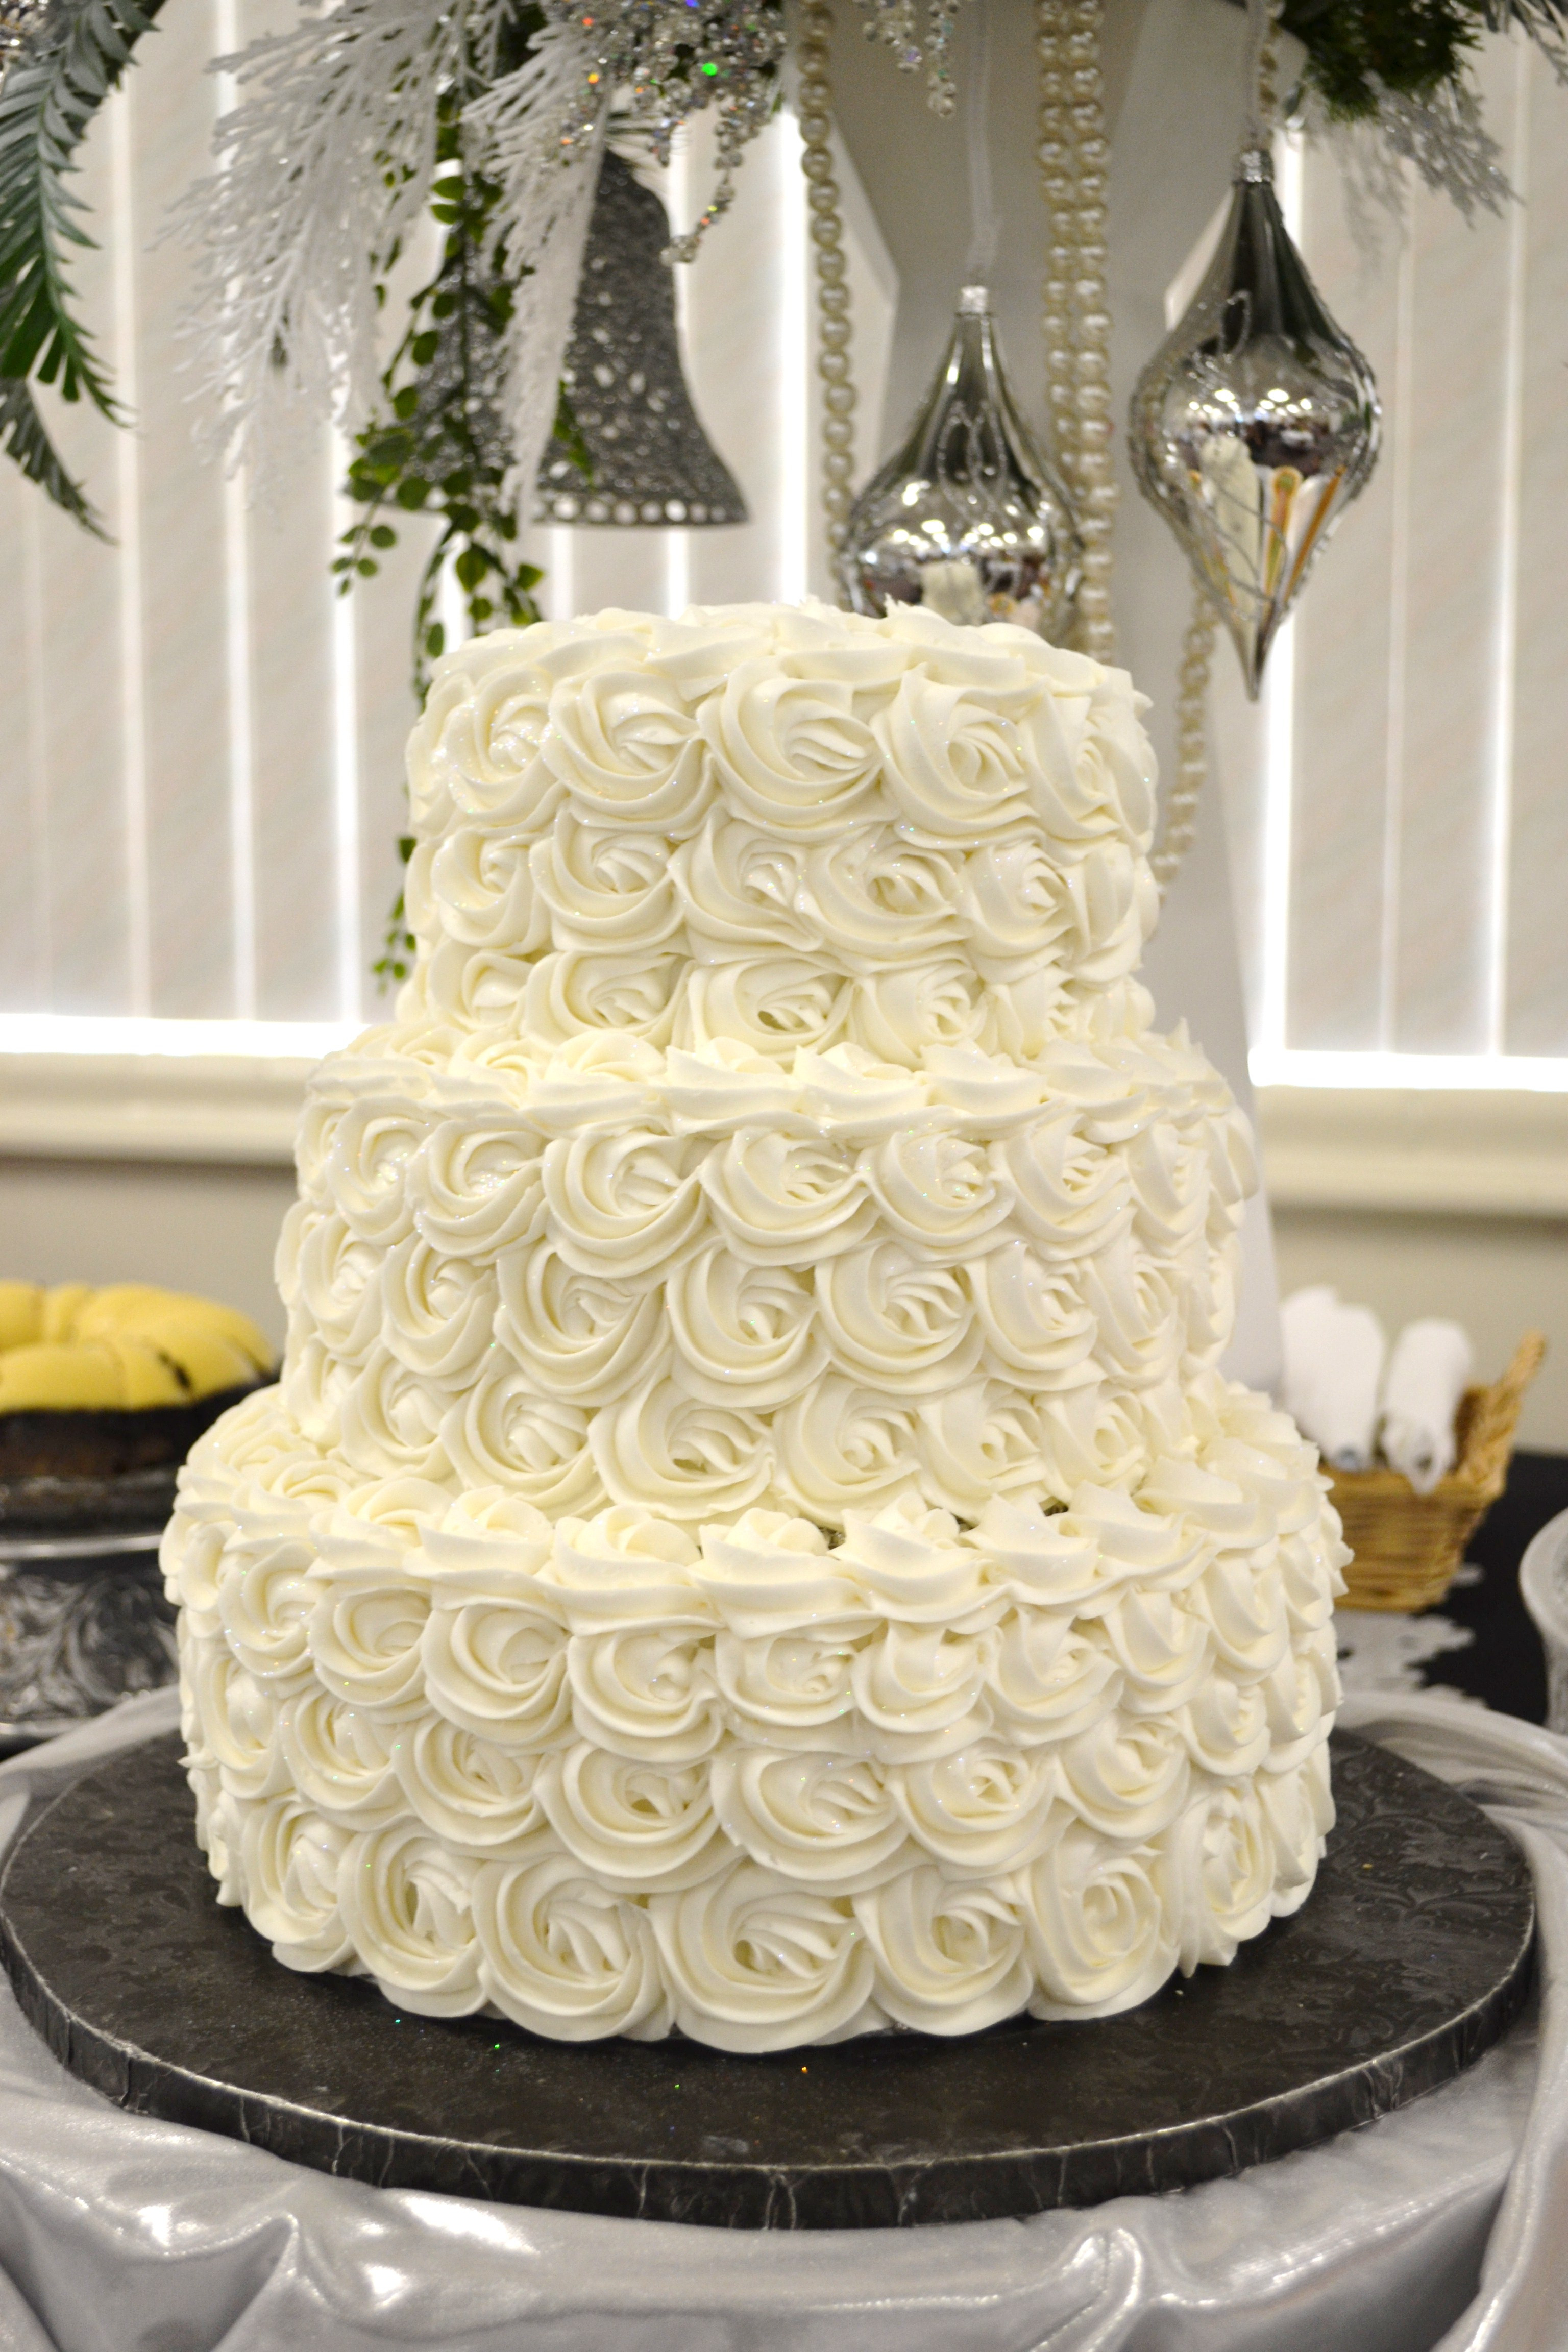 Tier Wedding Cakes
 Three tier wedding cakes idea in 2017